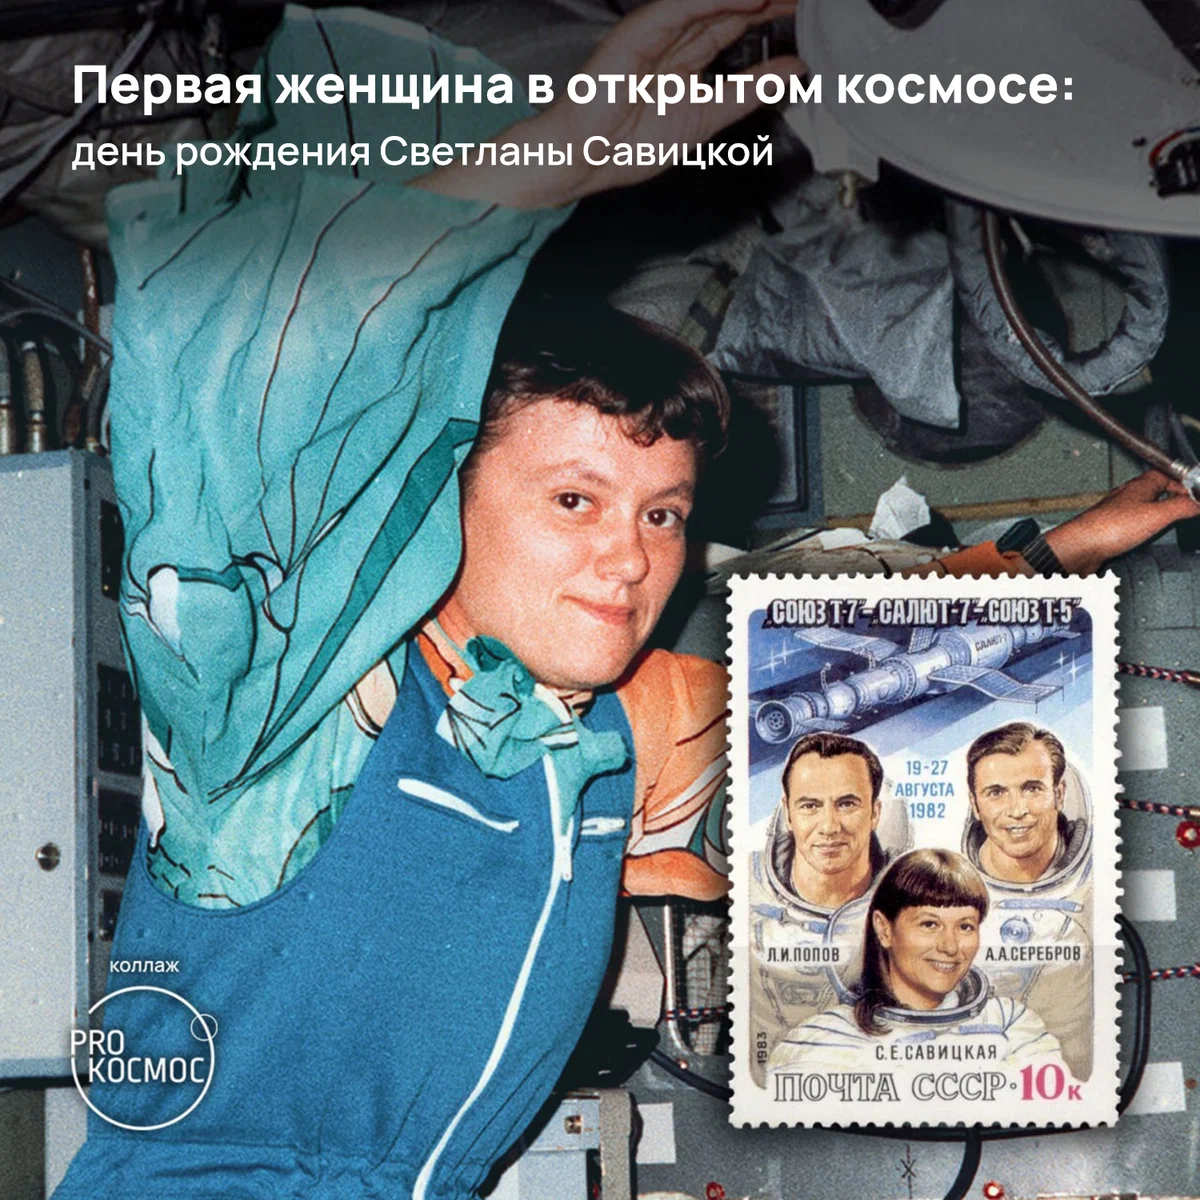 Первая женщина в открытом космосе: день рождения Светланы Савицкой⁠⁠ height=1200px width=1200px